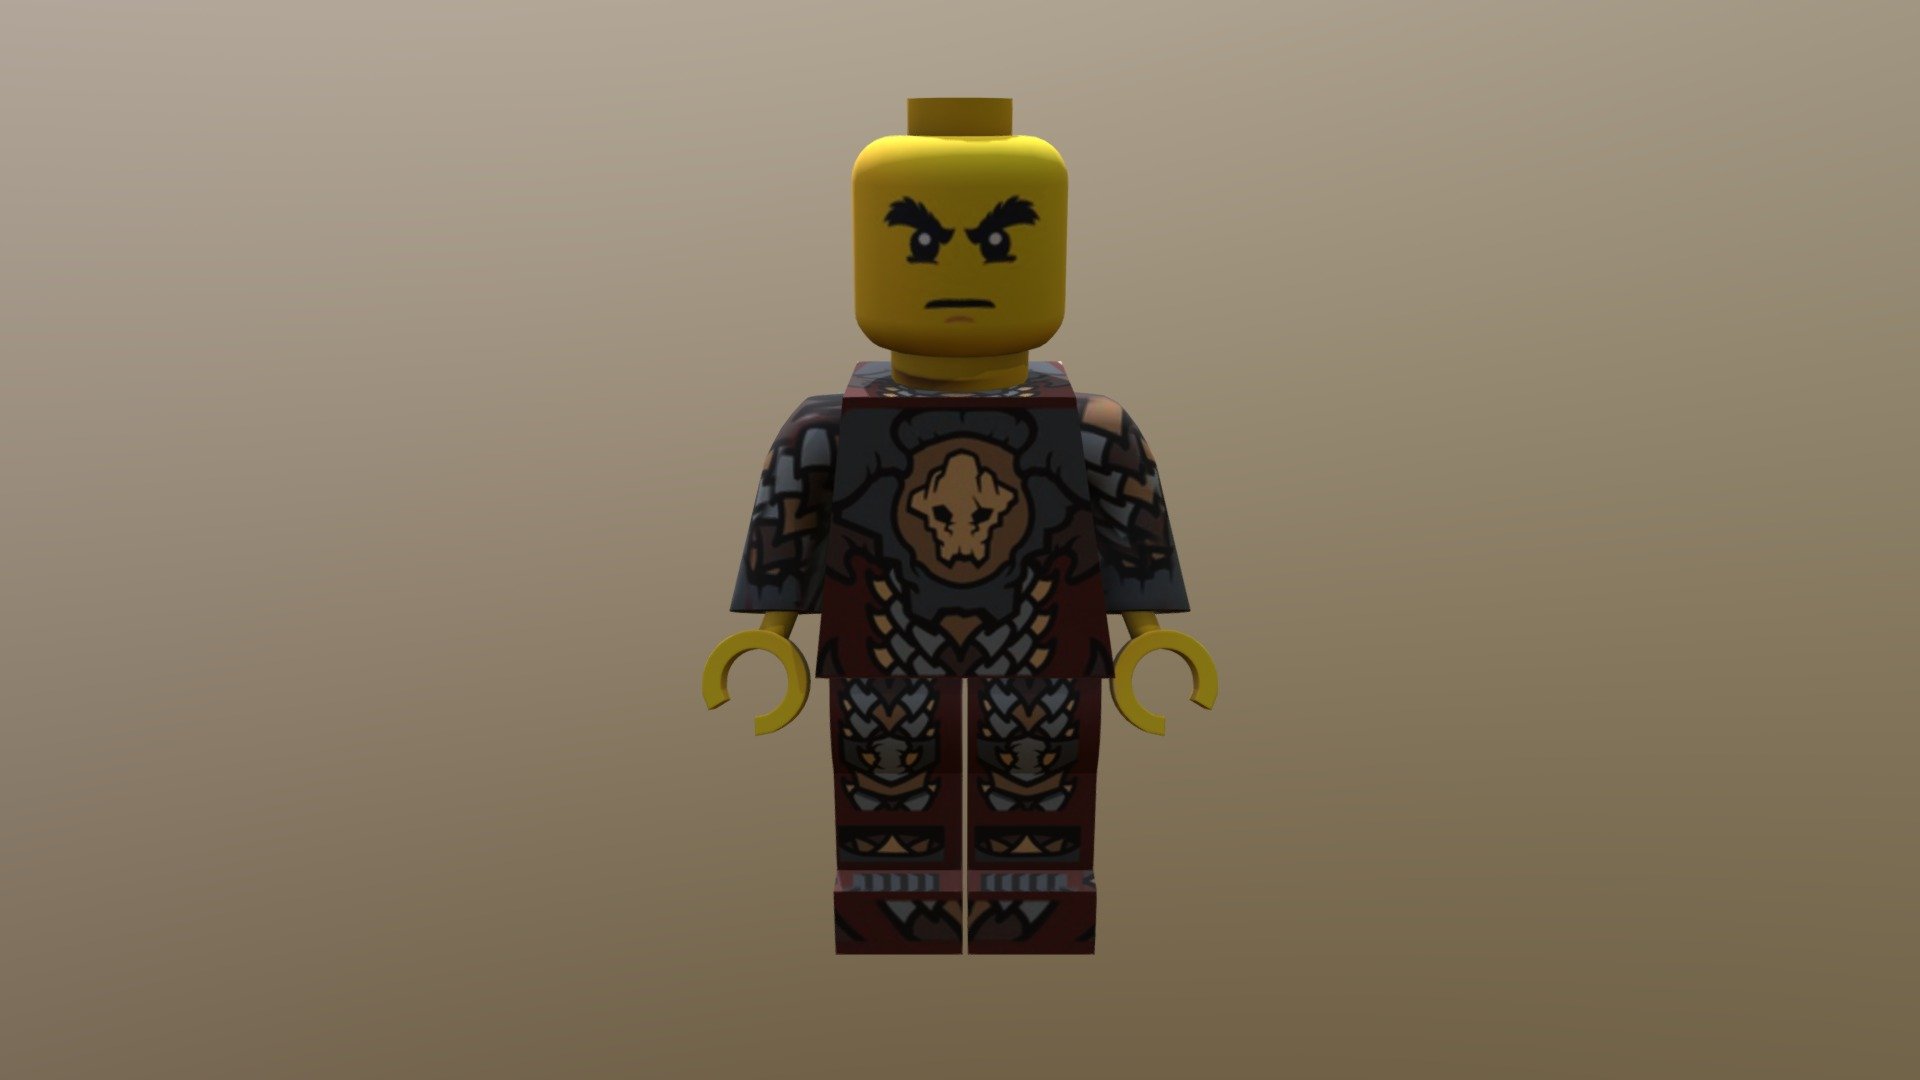 Lego ninja characters